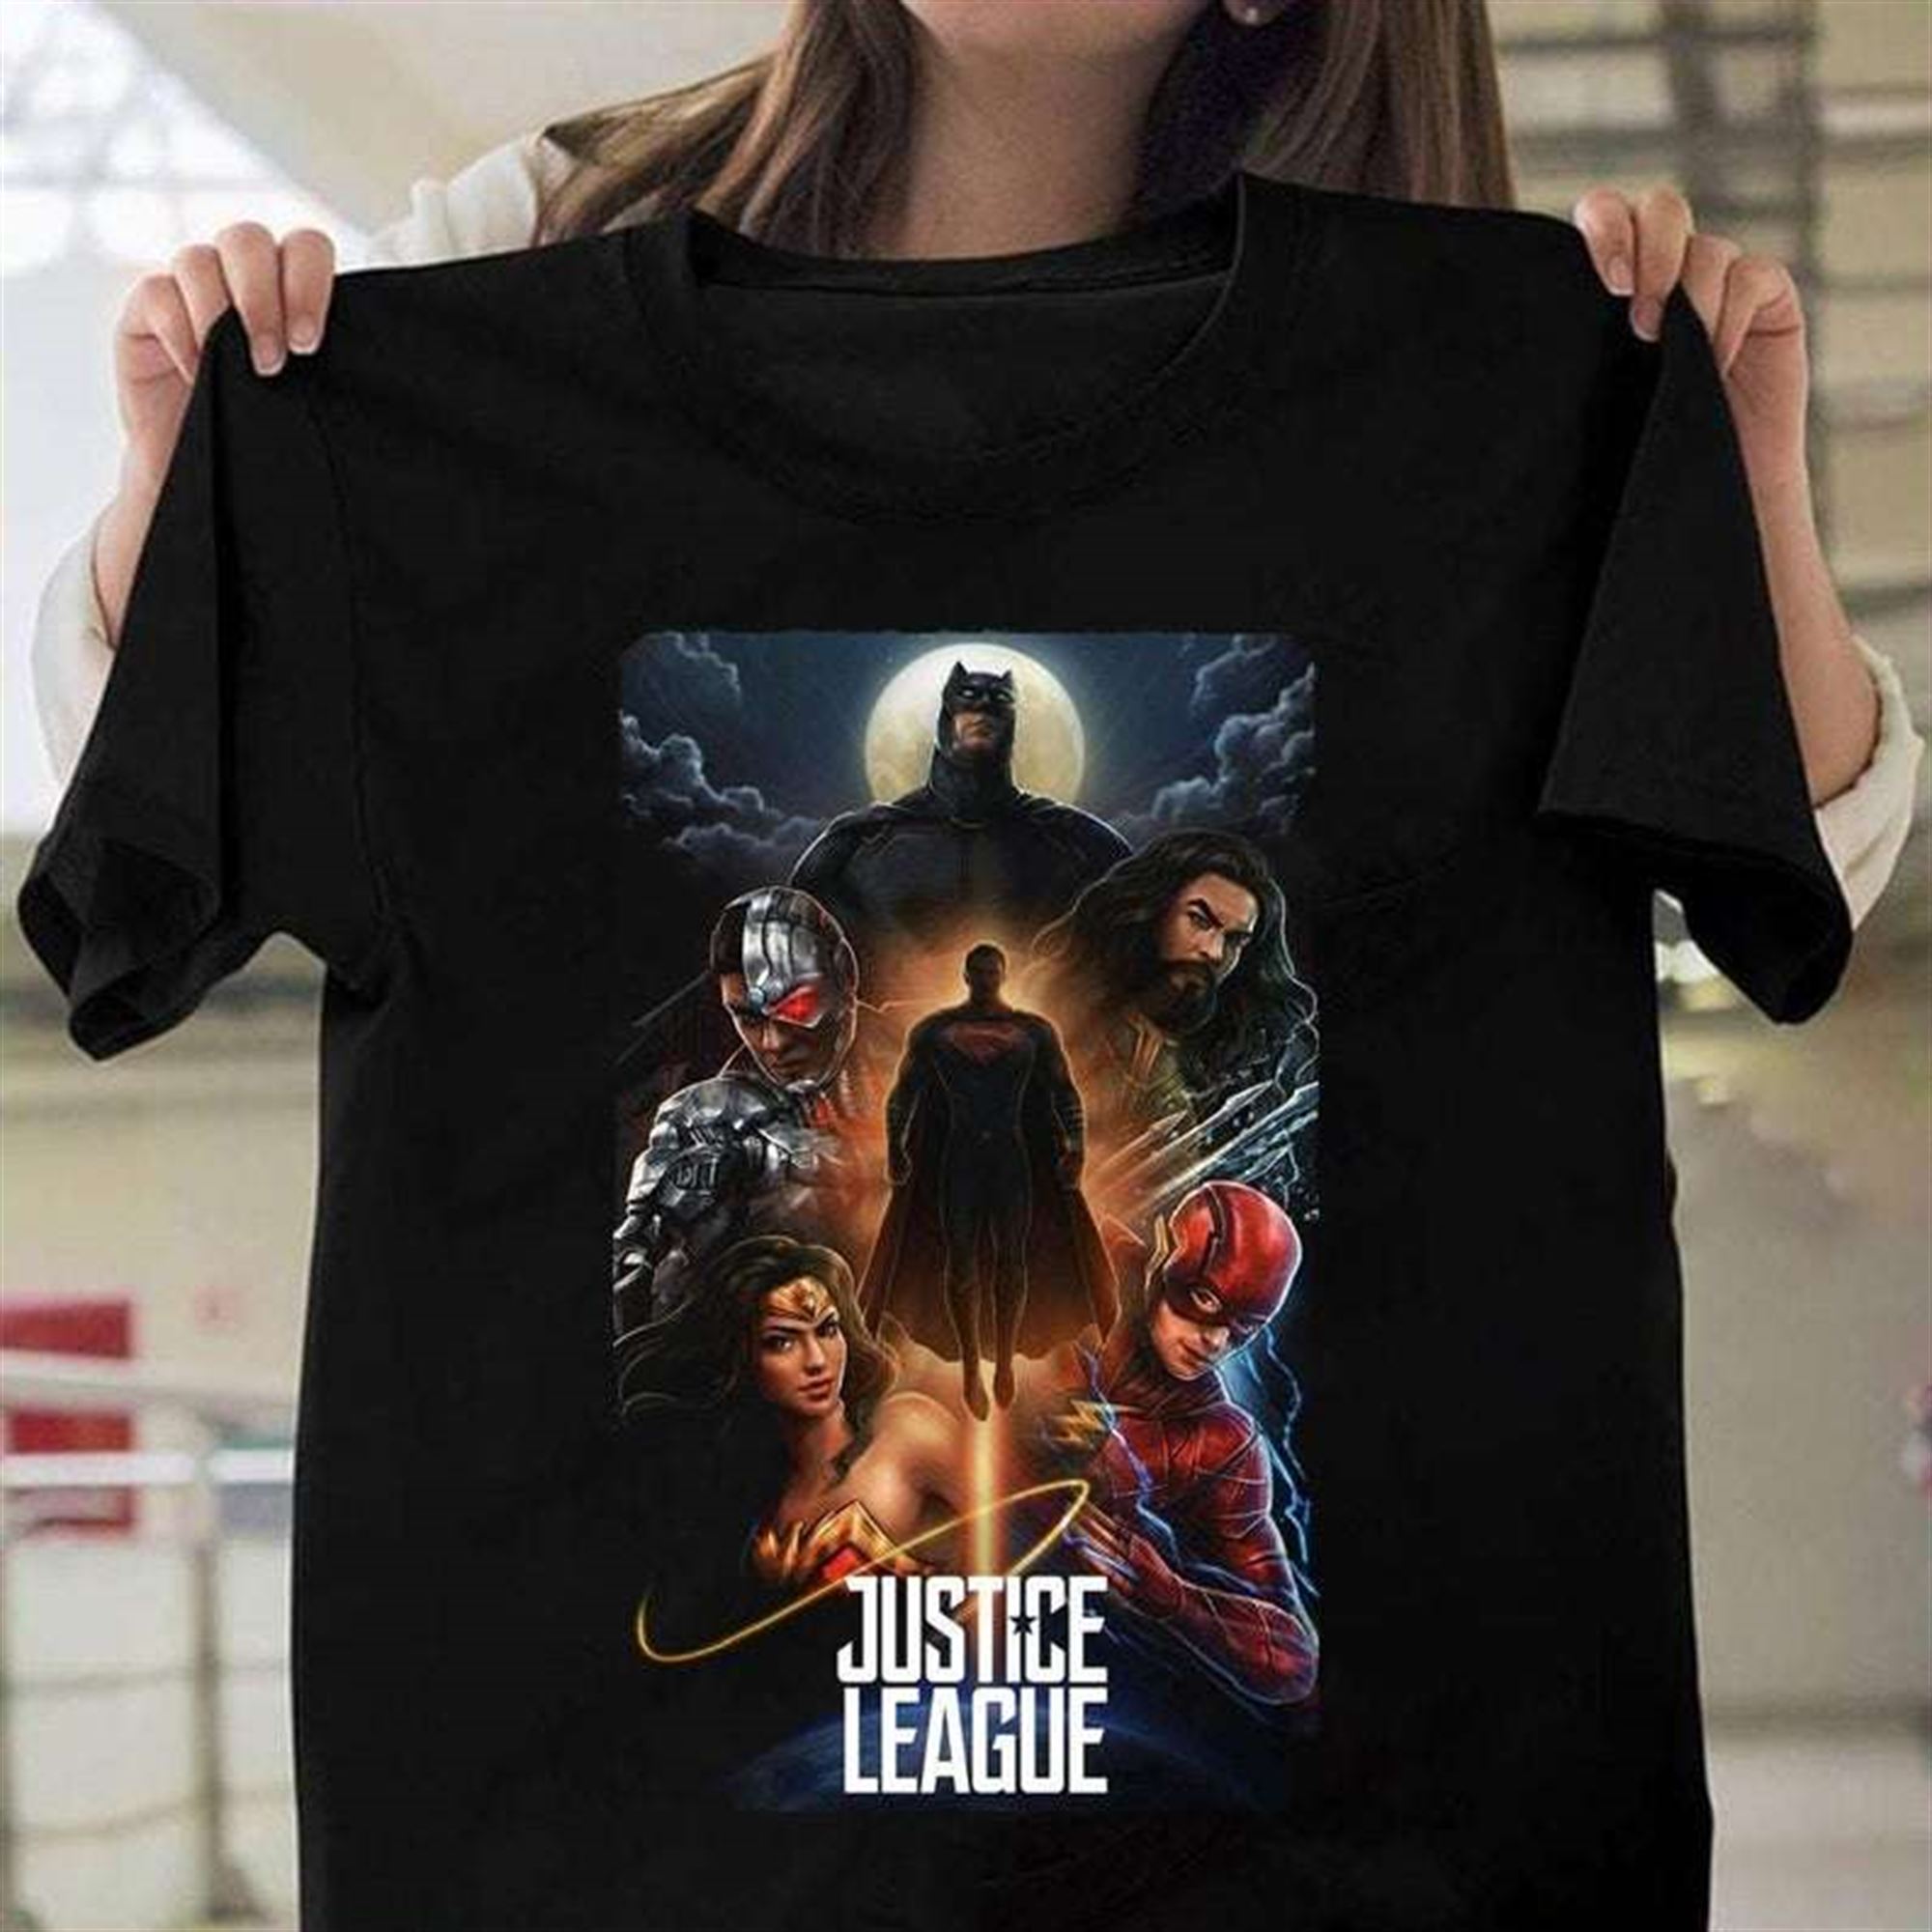 Justice League Dc Comics T Shirt Plus Size Up To 5x